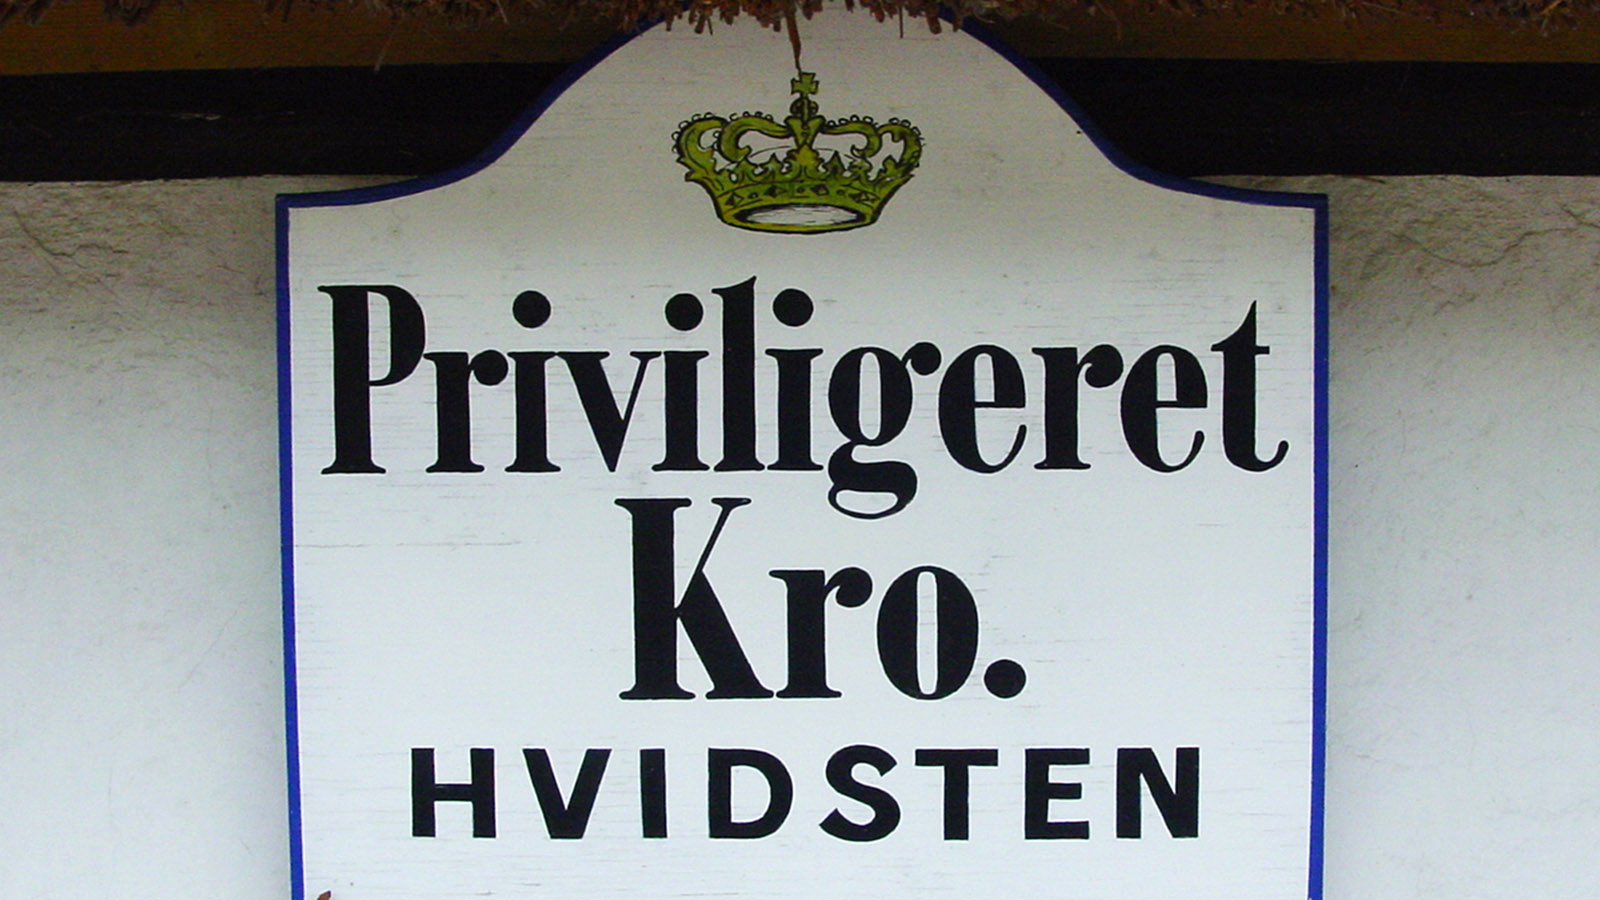 Hvidsten: Priviligeret Kro - vom König ausgewählt als Unterkunft. Foto: Hilke Maunder